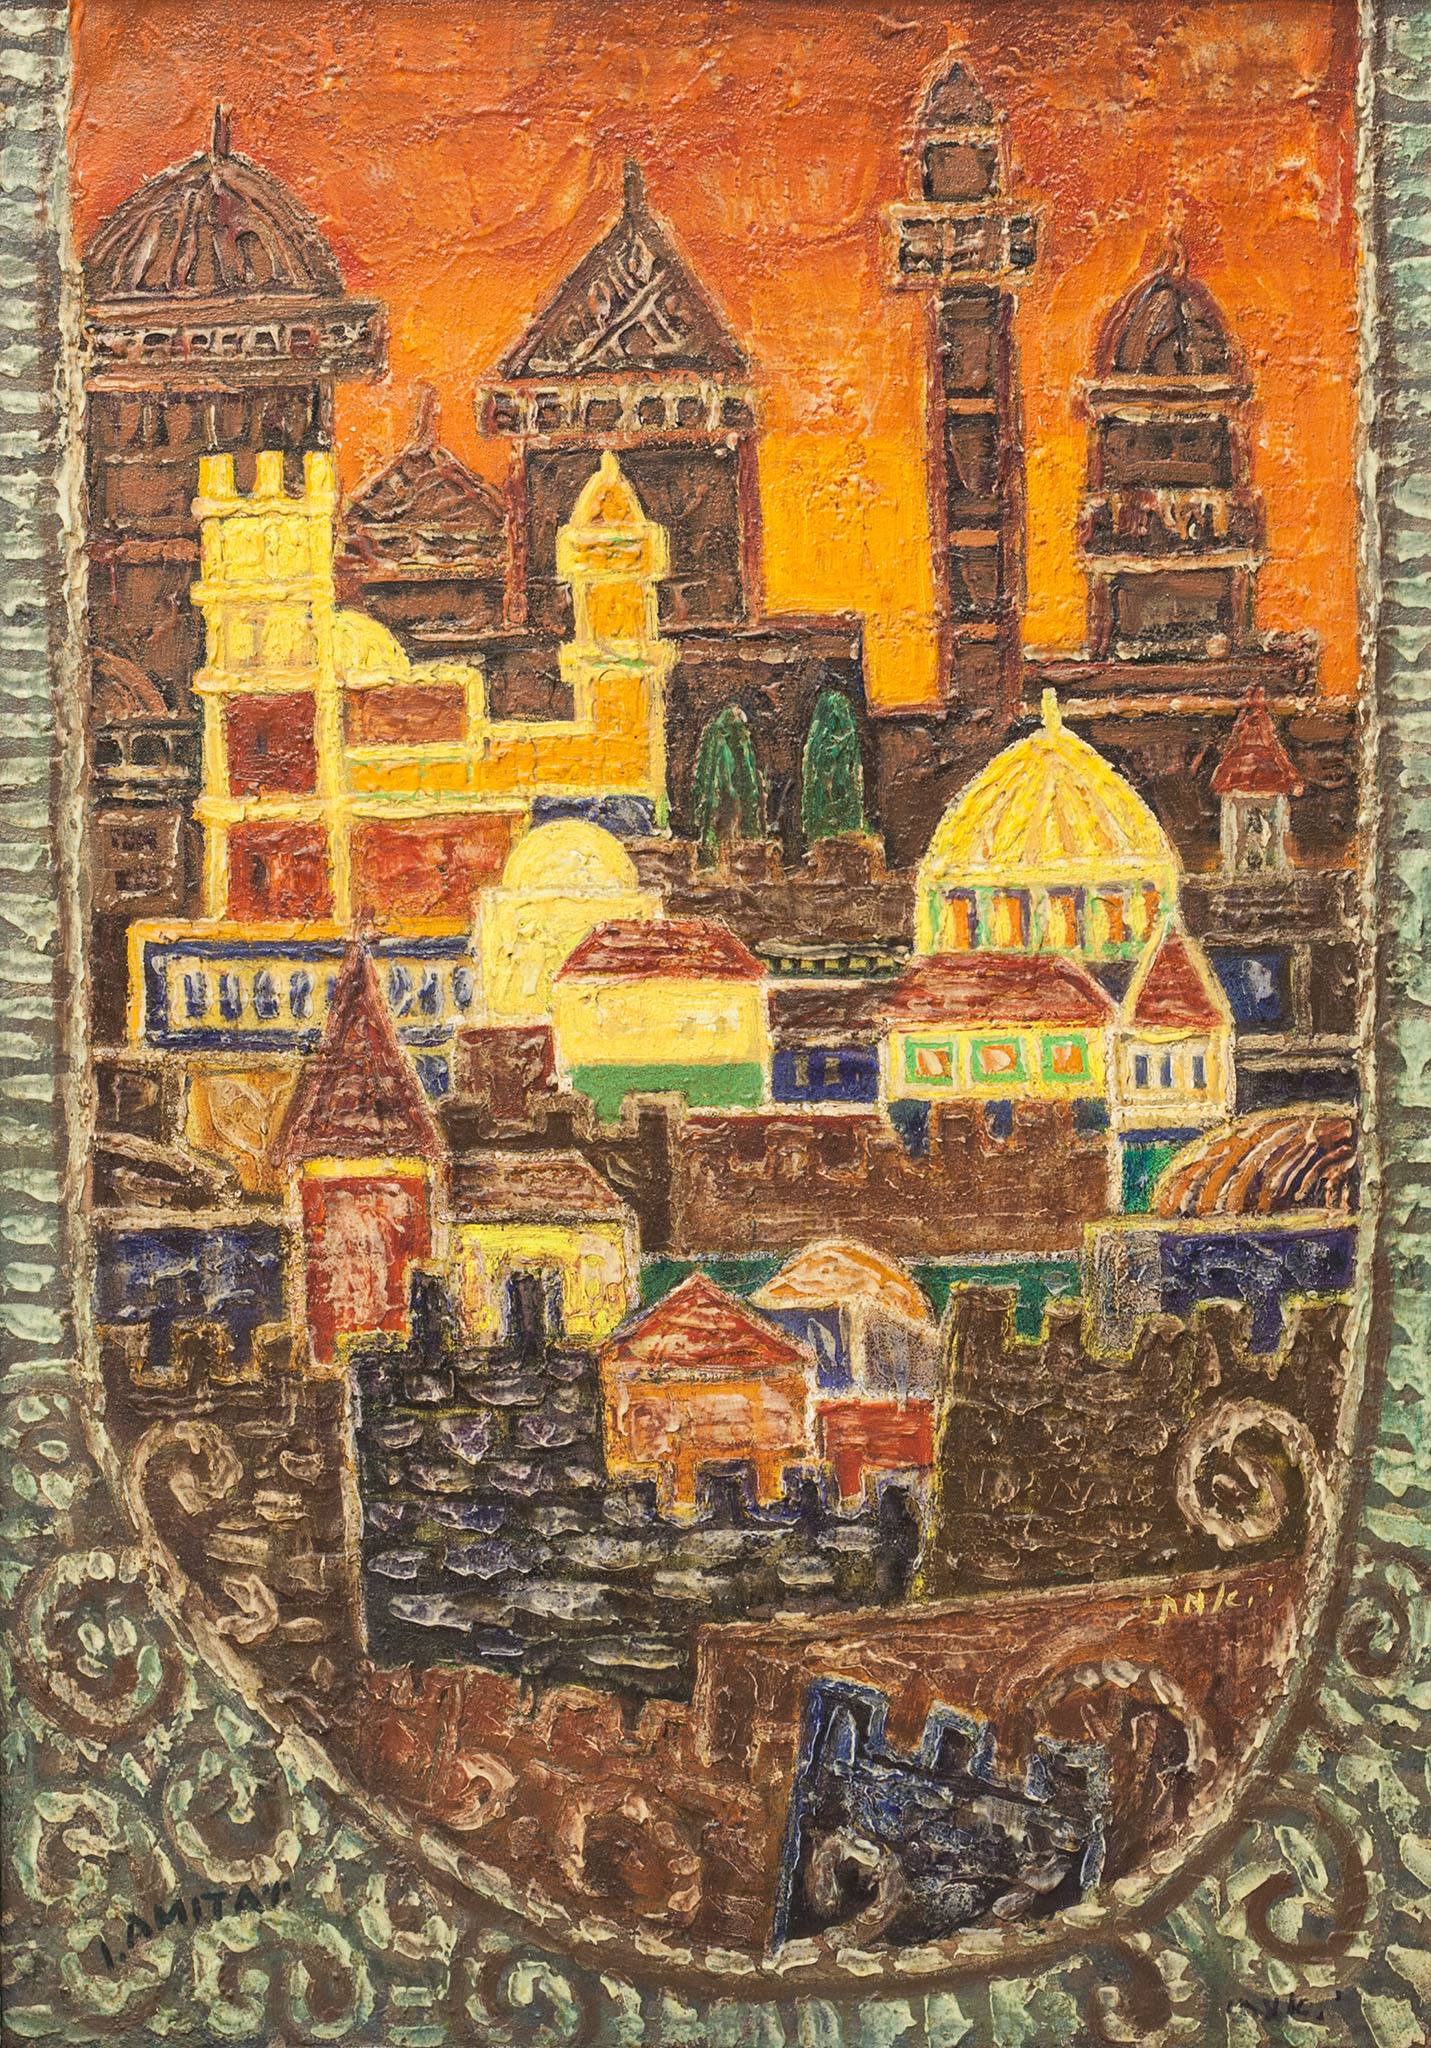 יצחק אמיתי, "ירושלים אגדה", שמן על בד, 65x93 ס"מ